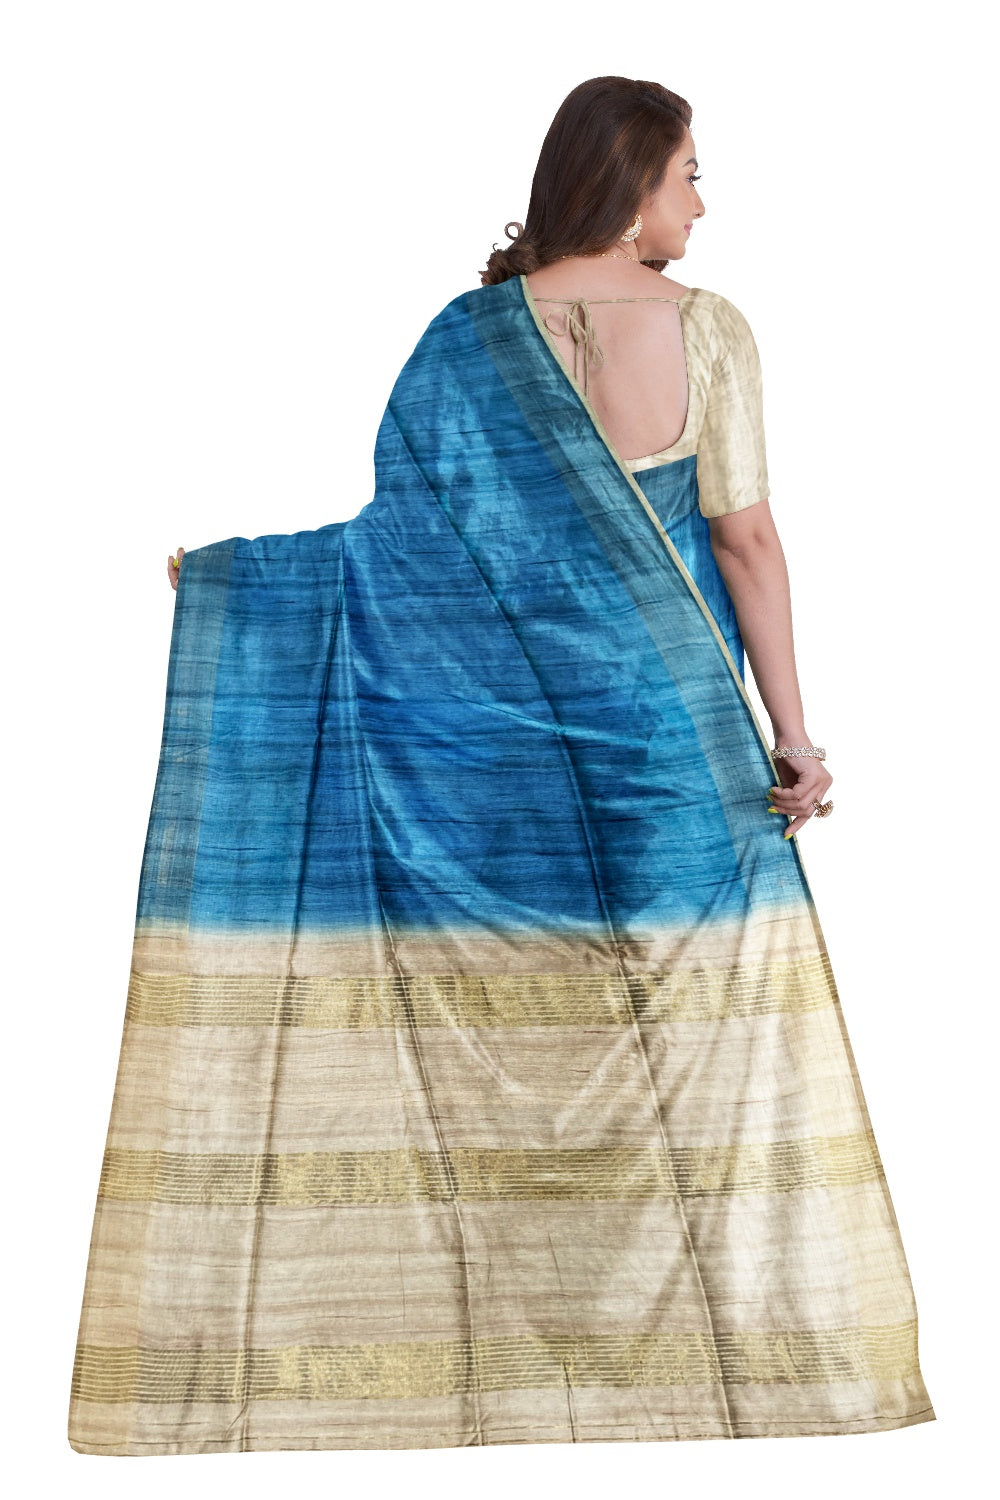 Southloom Tussar Thread Work Blue Designer Saree with Beige Pallu